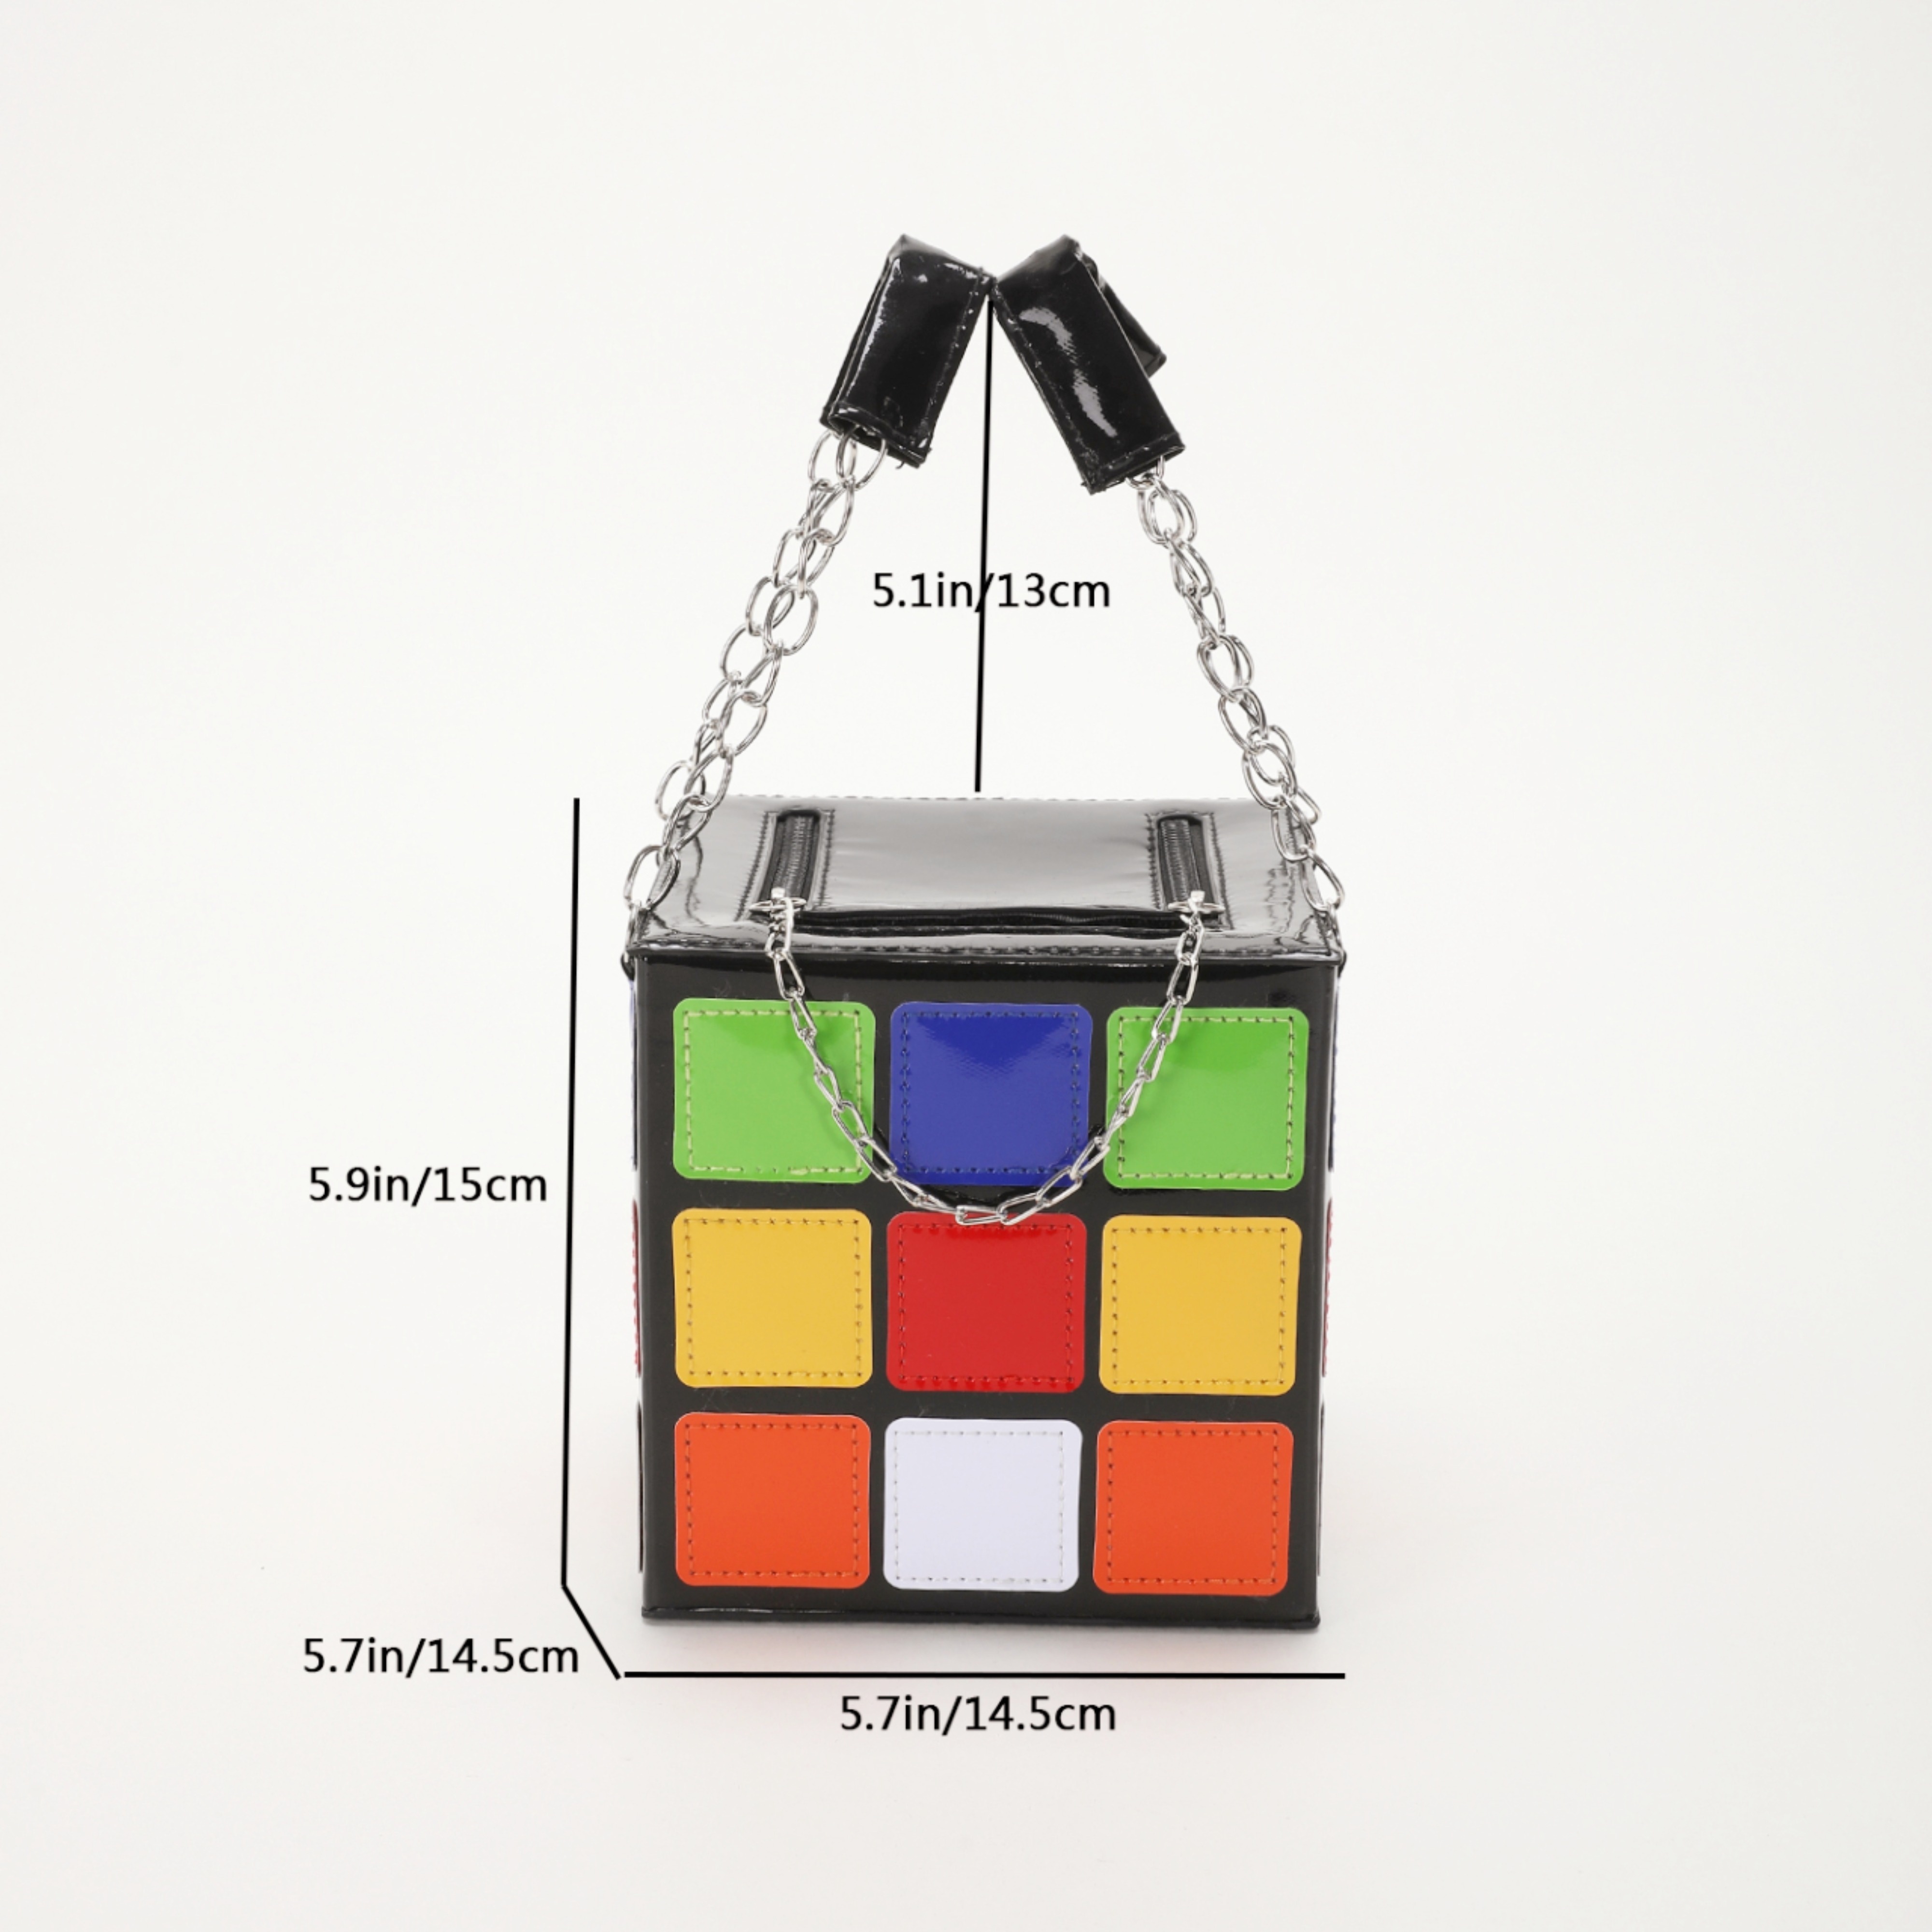 Cube Handbag 